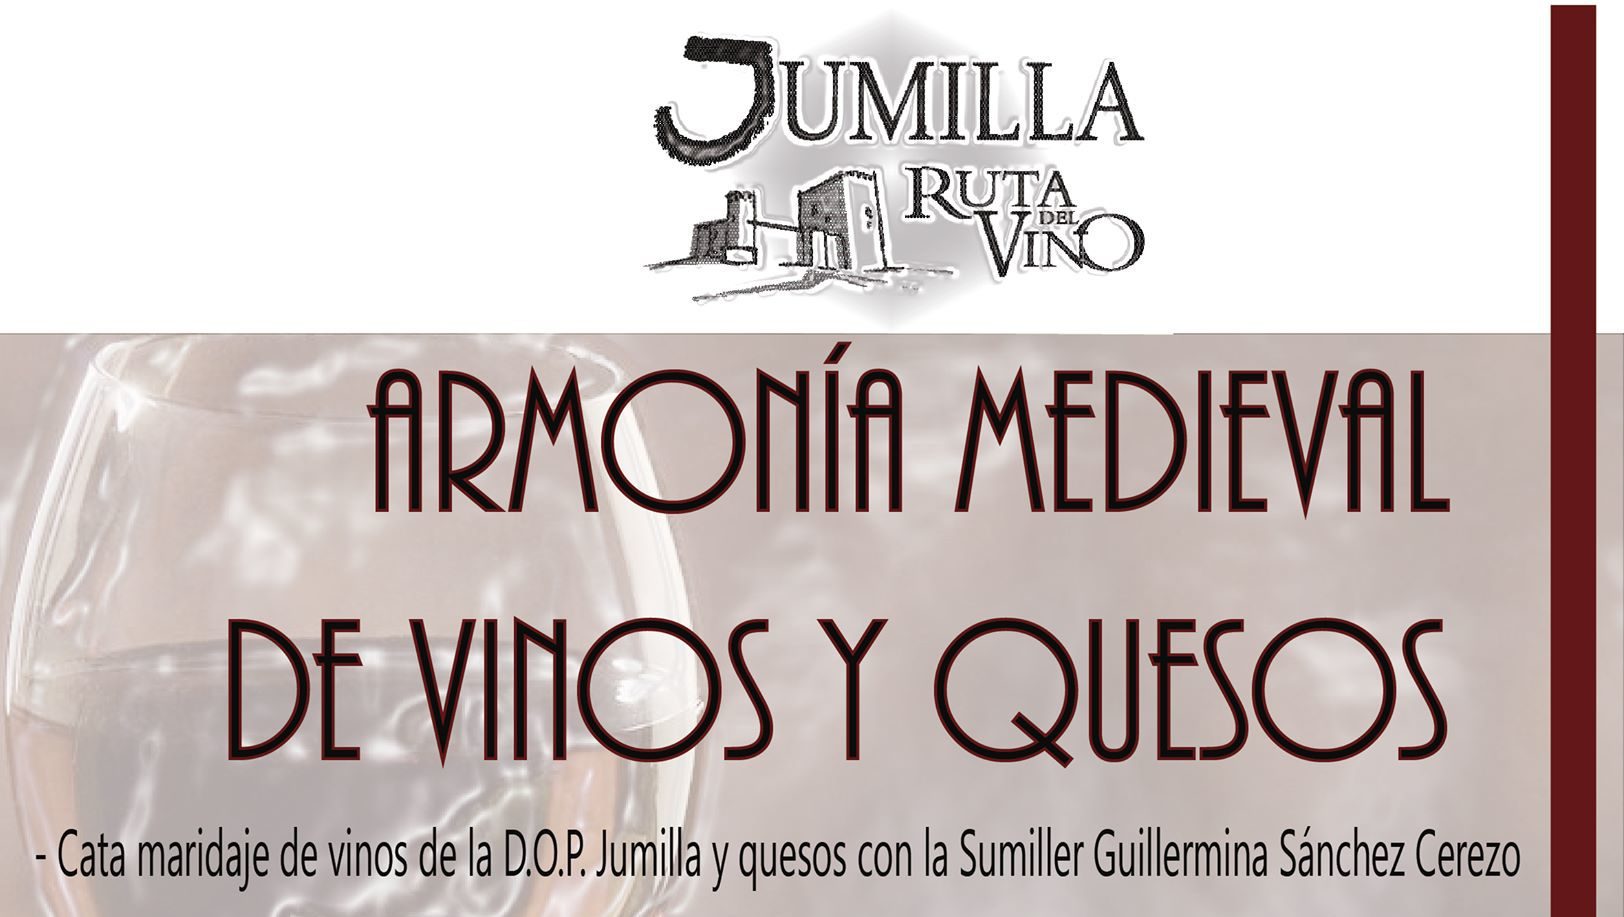 El castillo de Jumilla acoge mañana sábado ‘Armonía Medieval de Vinos  y Quesos’